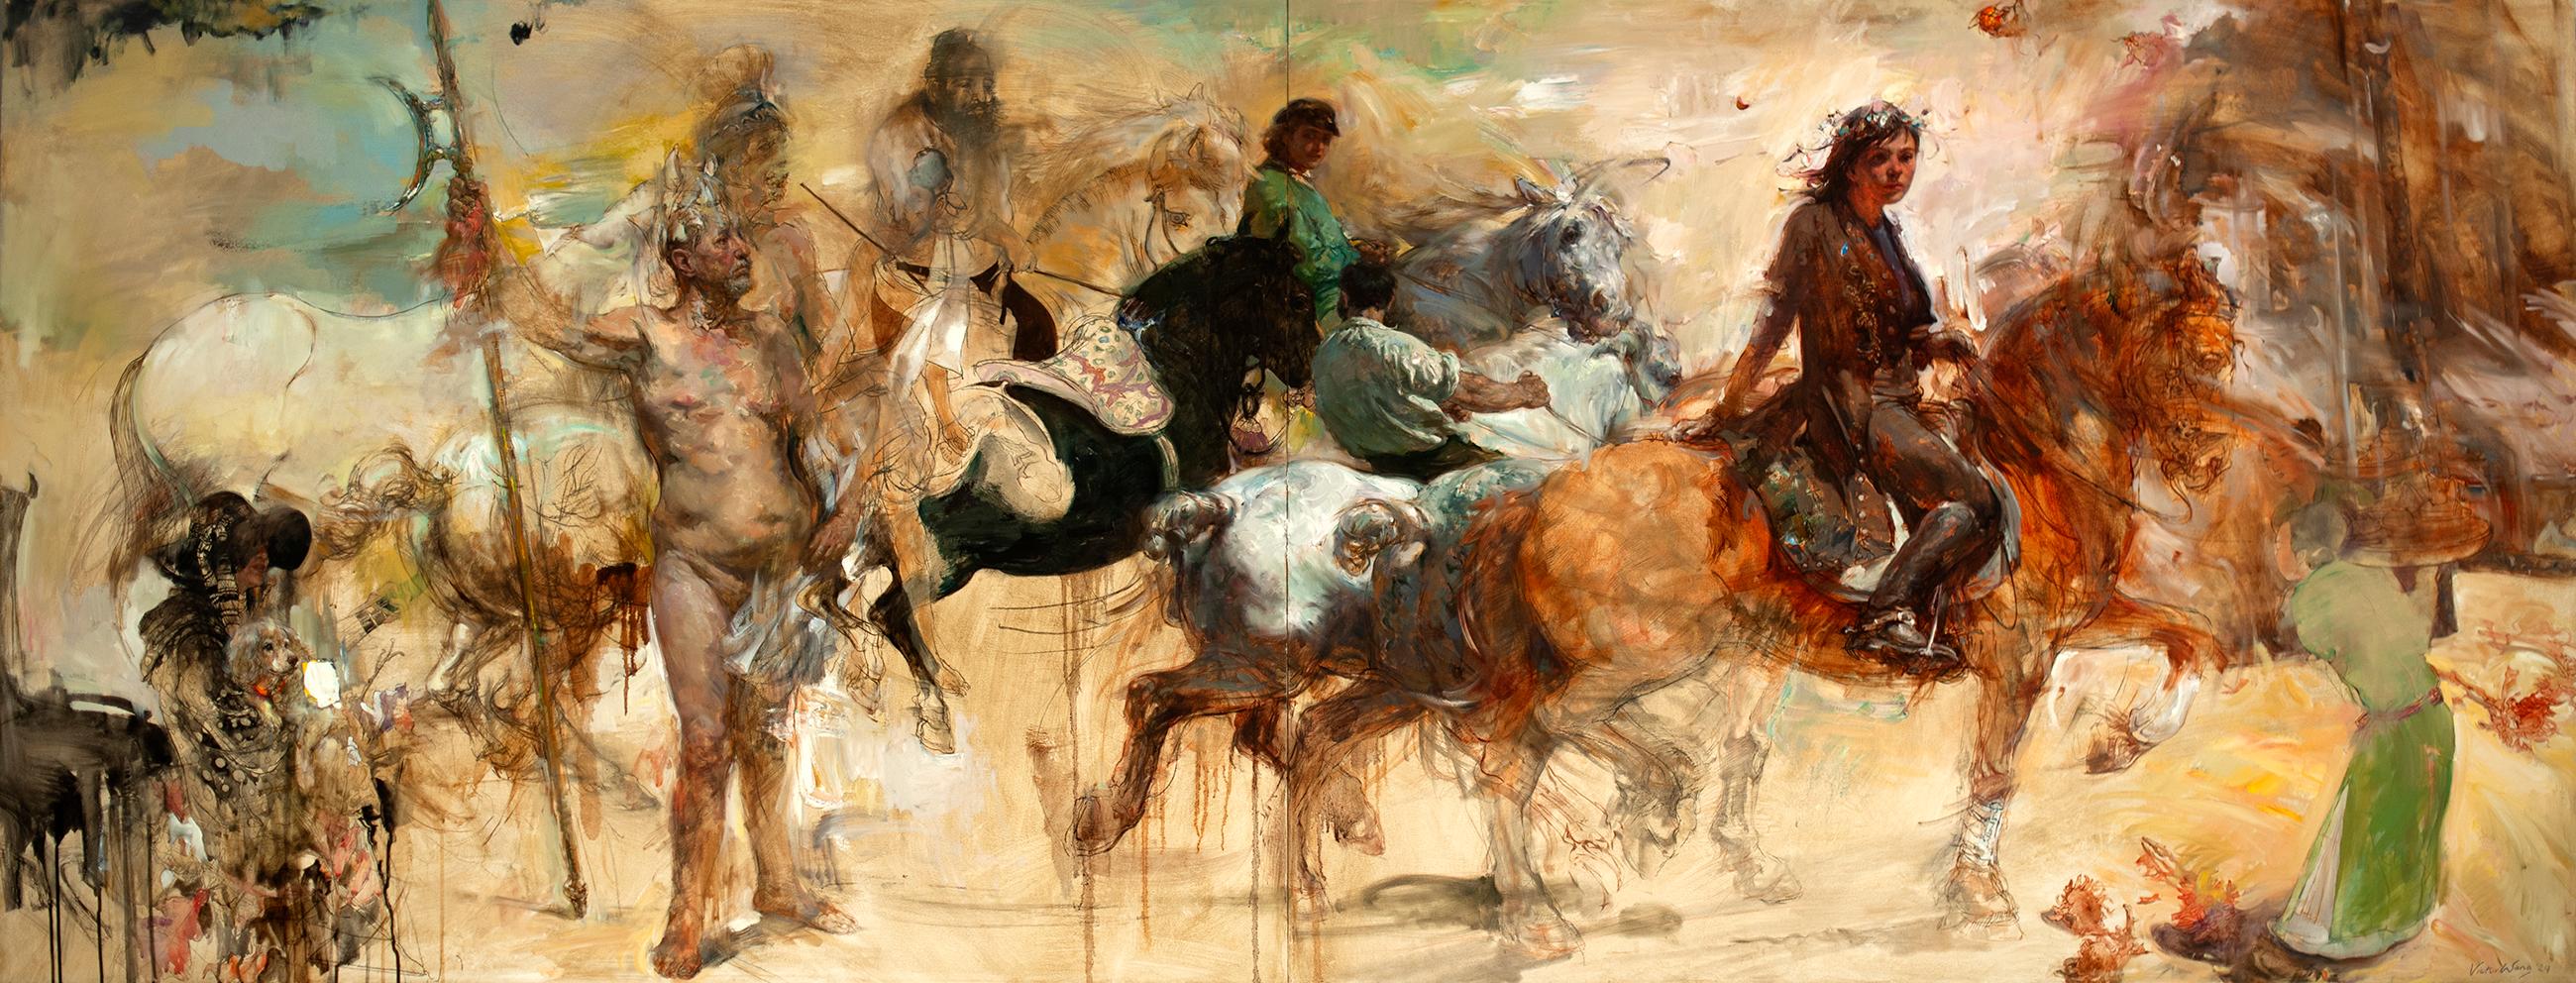 Figurative Painting Victor Wang - "Autumn Riding", peinture à l'huile sur toile, collage, figuratif